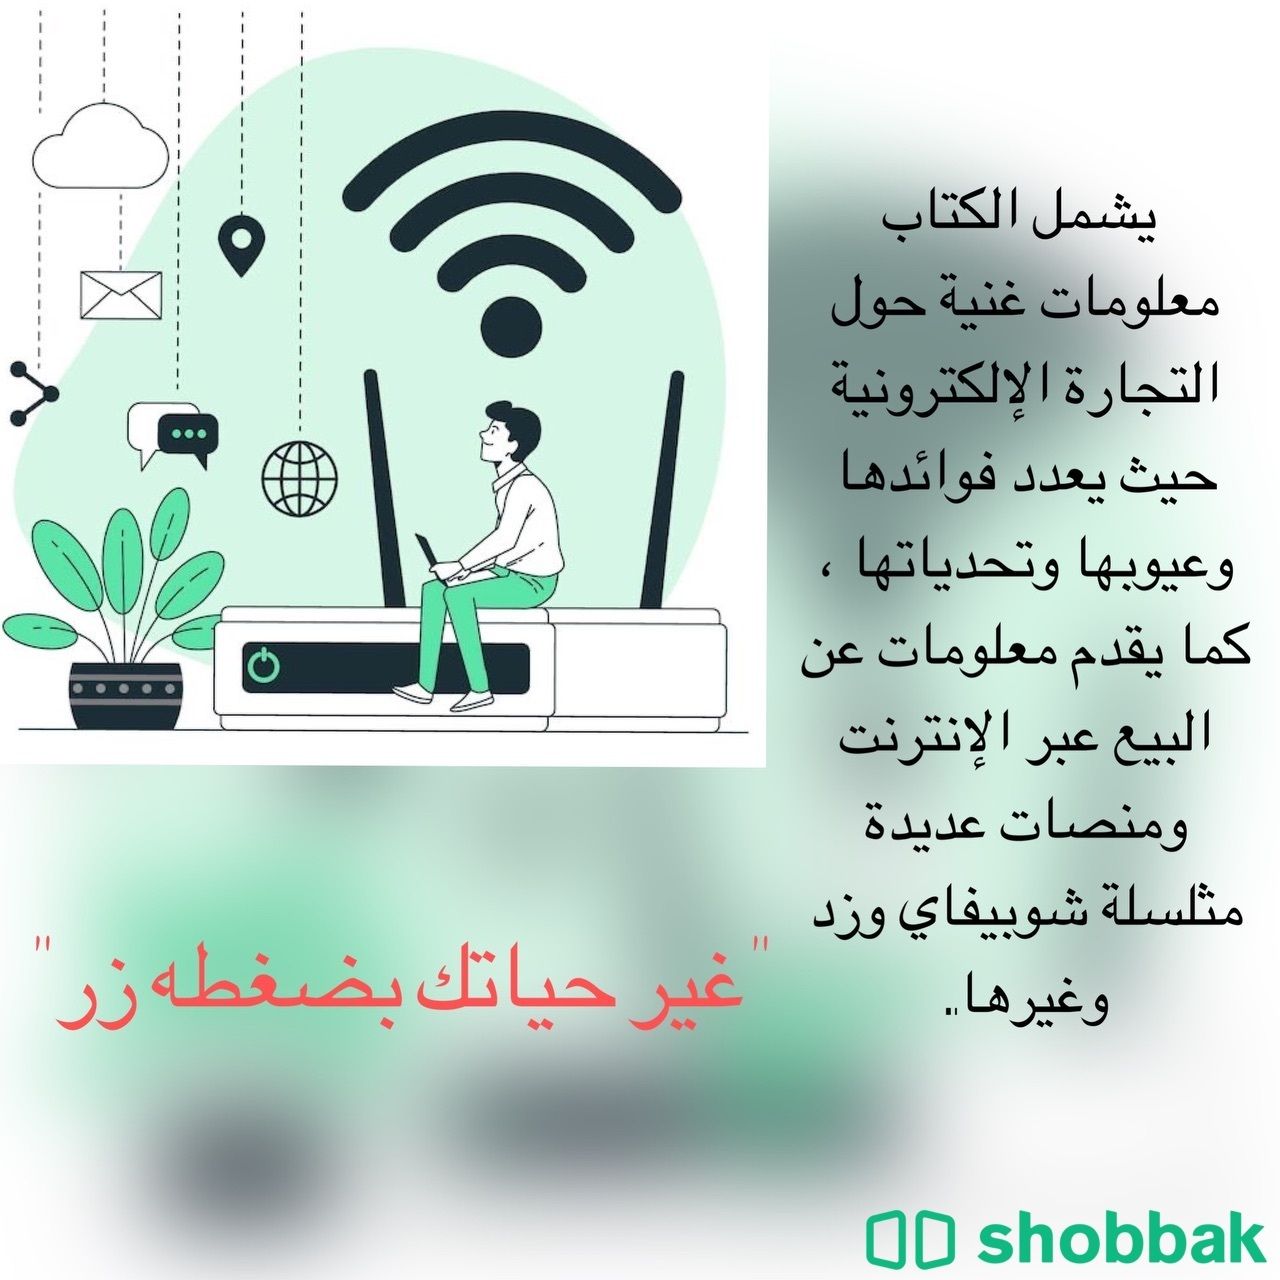 التجارة الاكترونية من الصفر الي الاحتراف Shobbak Saudi Arabia